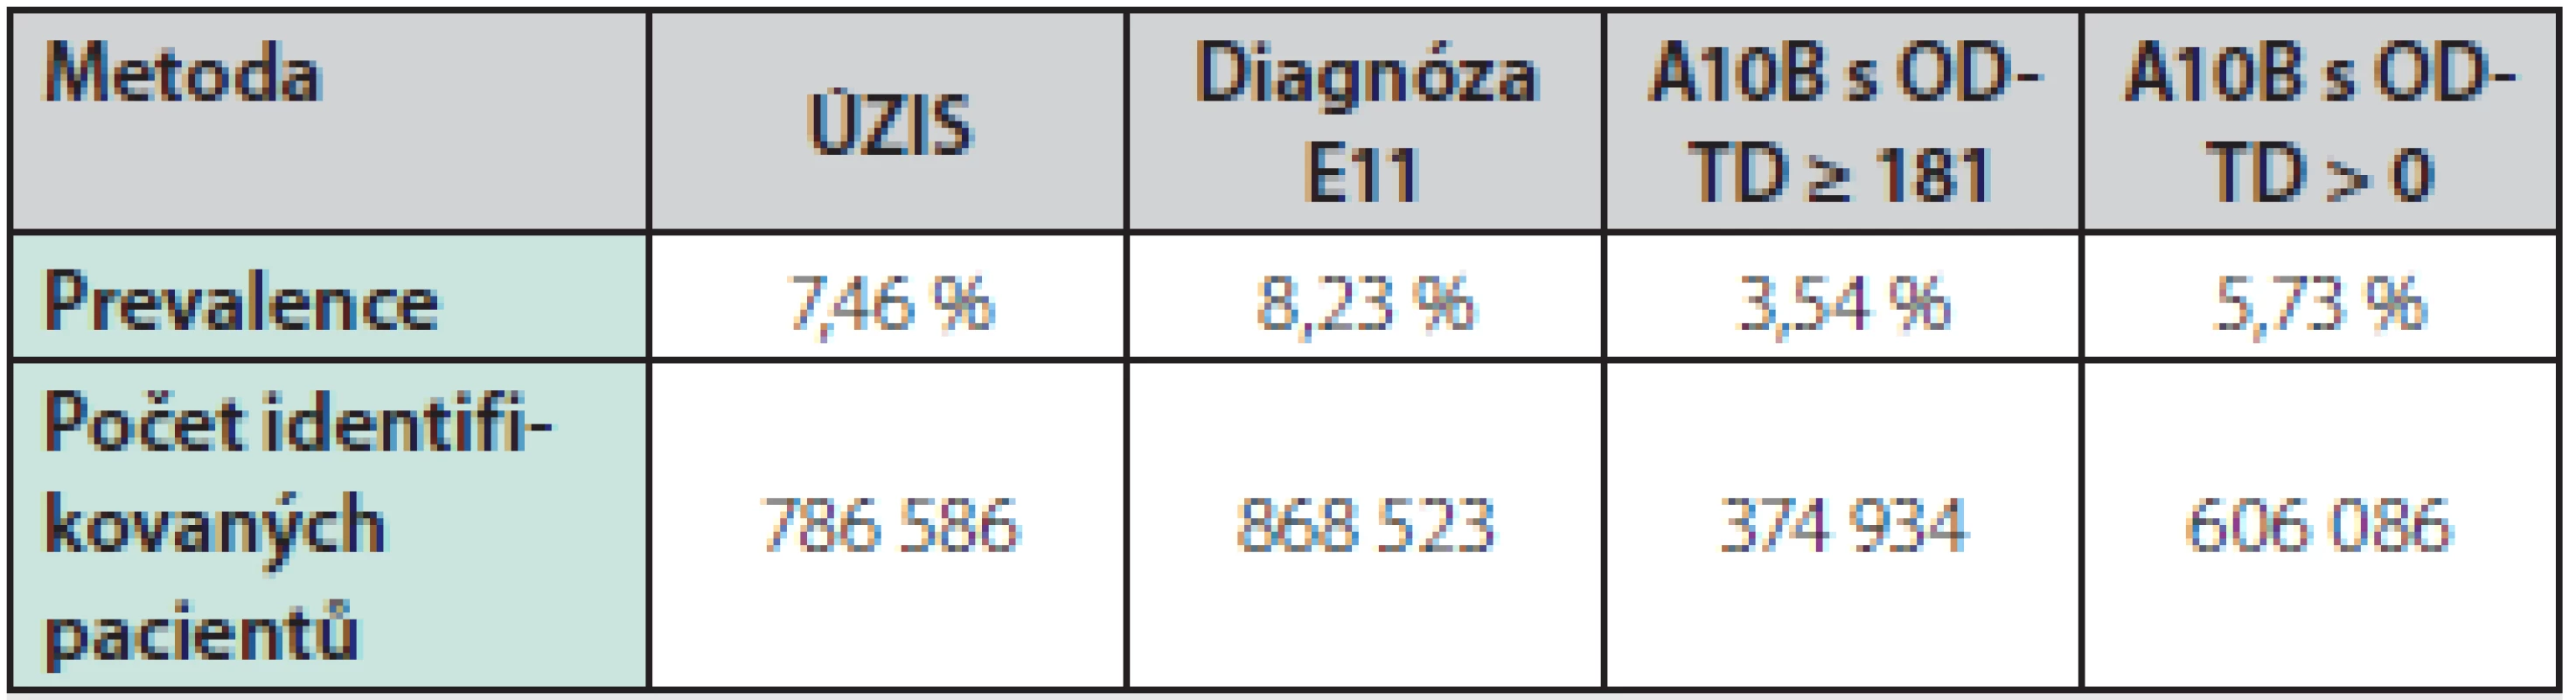 Přehled výskytu diabetu mellitu 2. typu v ČR v roce 2015 podle jednotlivých metod identifikace (standardizováno)